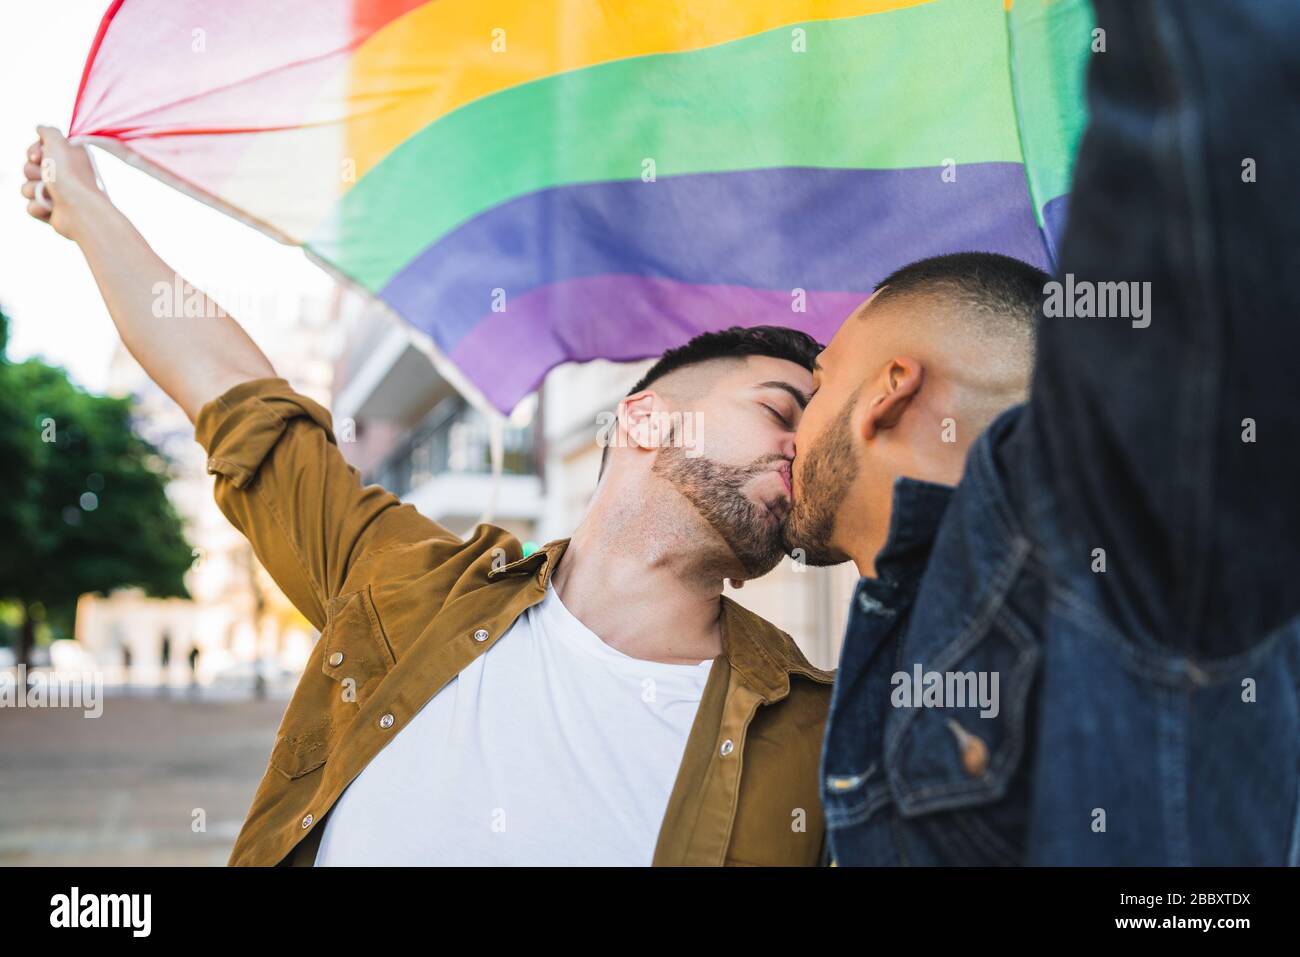 Portrait of young couple embracing et montrant leur amour avec drapeau arc-en-ciel à la rue. Amour LGBT et concept. Banque D'Images